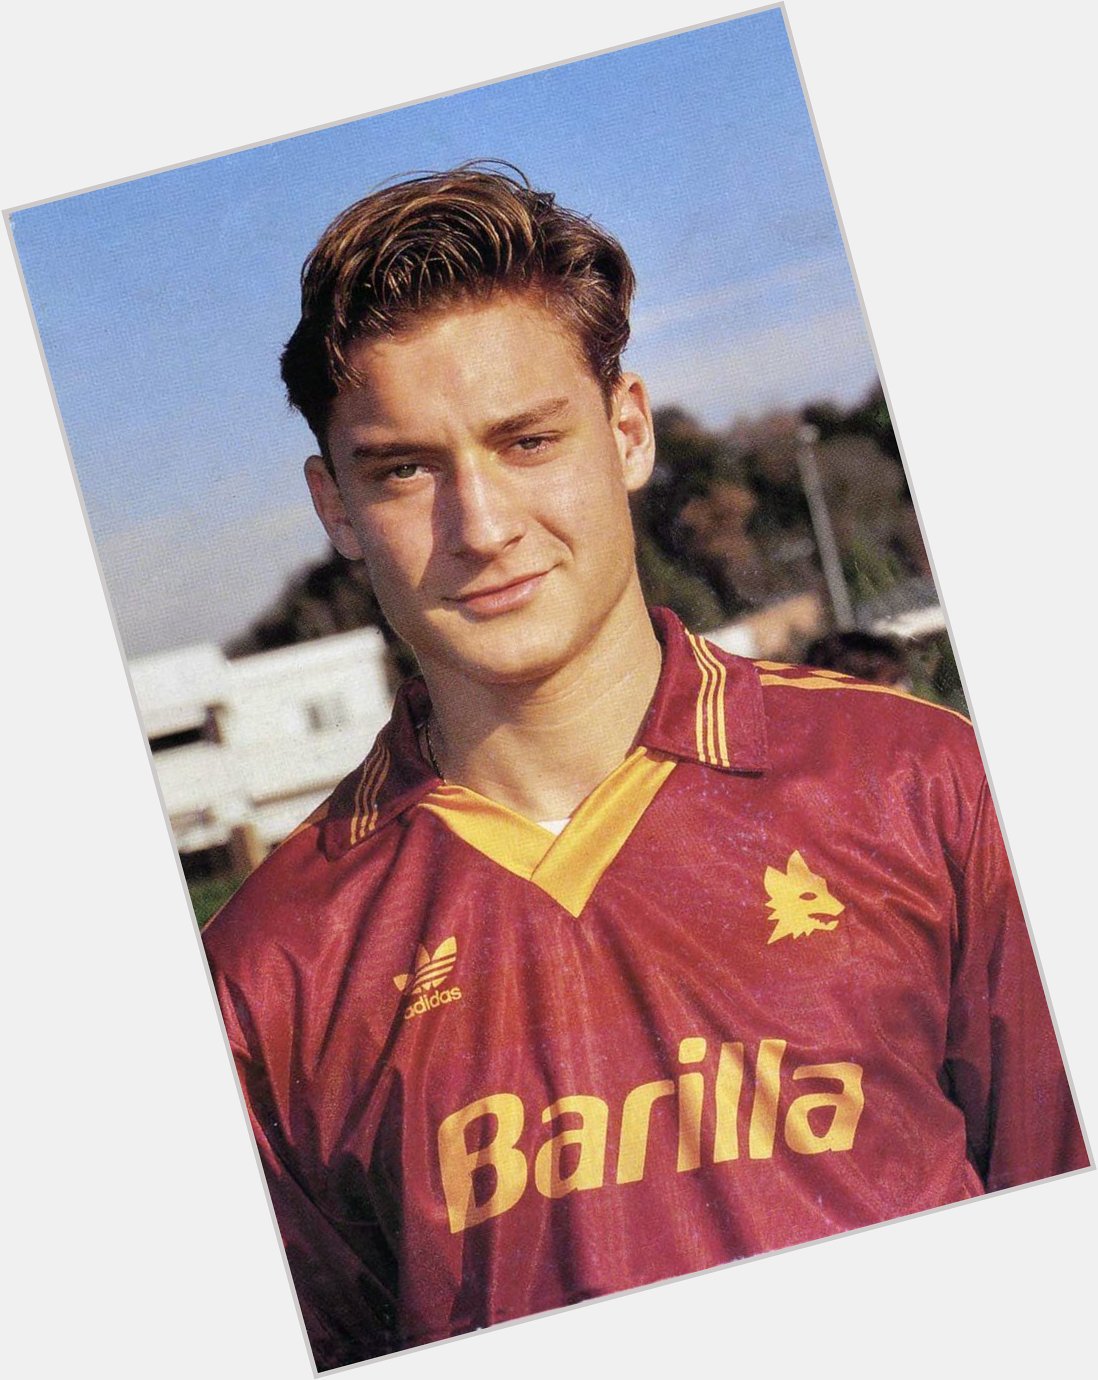 Happy Birthday Francesco Totti. 